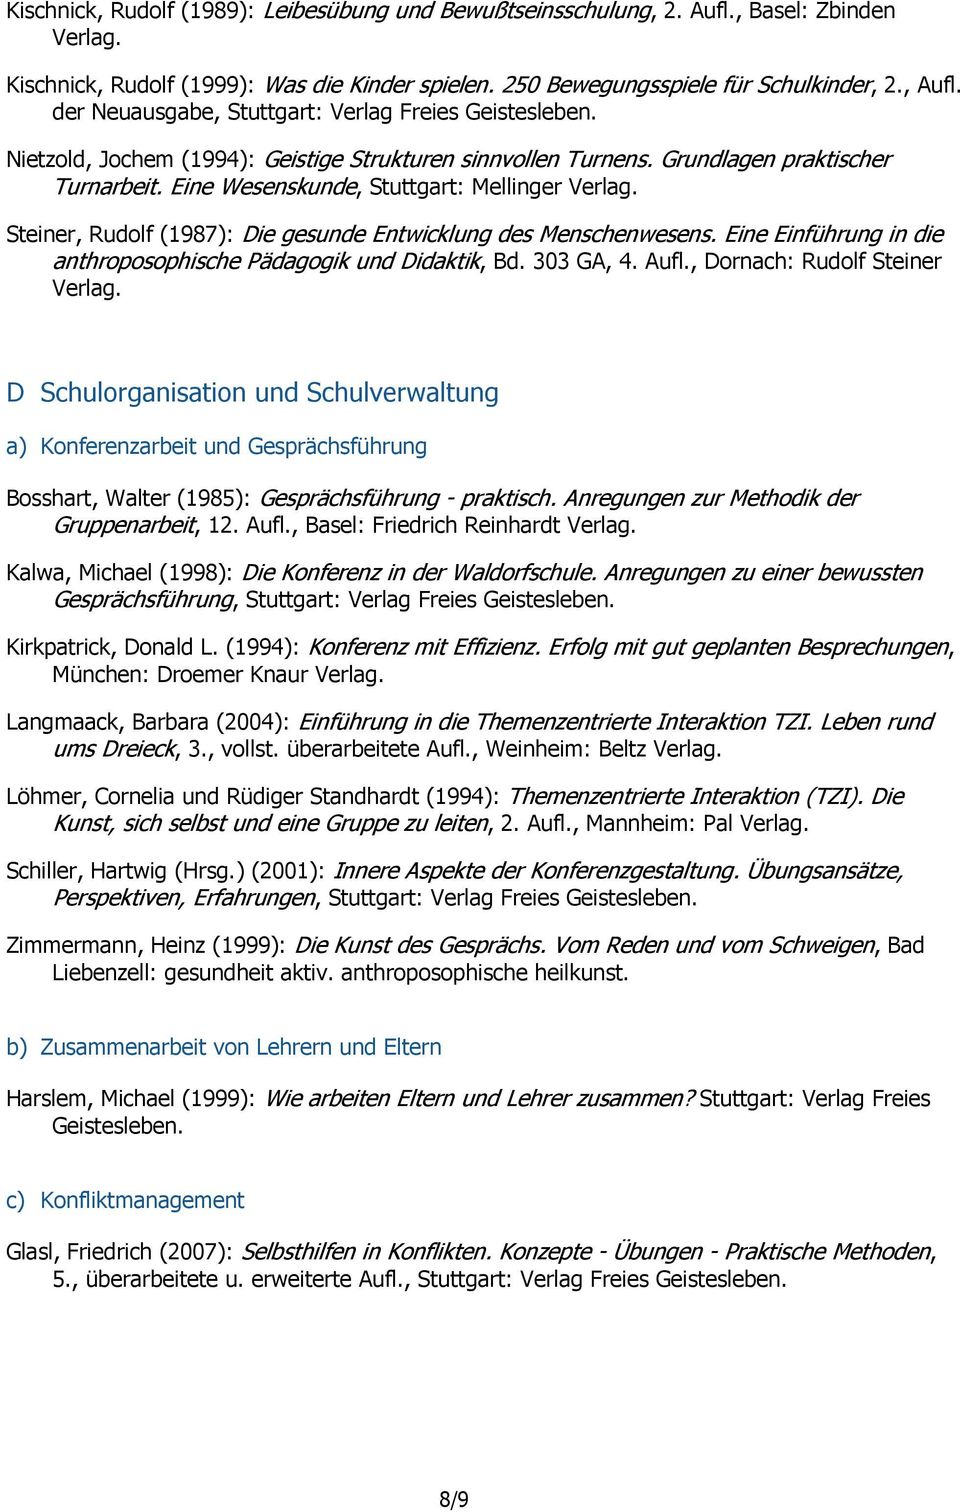 Steiner, Rudolf (1987): Die gesunde Entwicklung des Menschenwesens. Eine Einführung in die anthroposophische Pädagogik und Didaktik, Bd. 303 GA, 4. Aufl., Dornach: Rudolf Steiner Verlag.